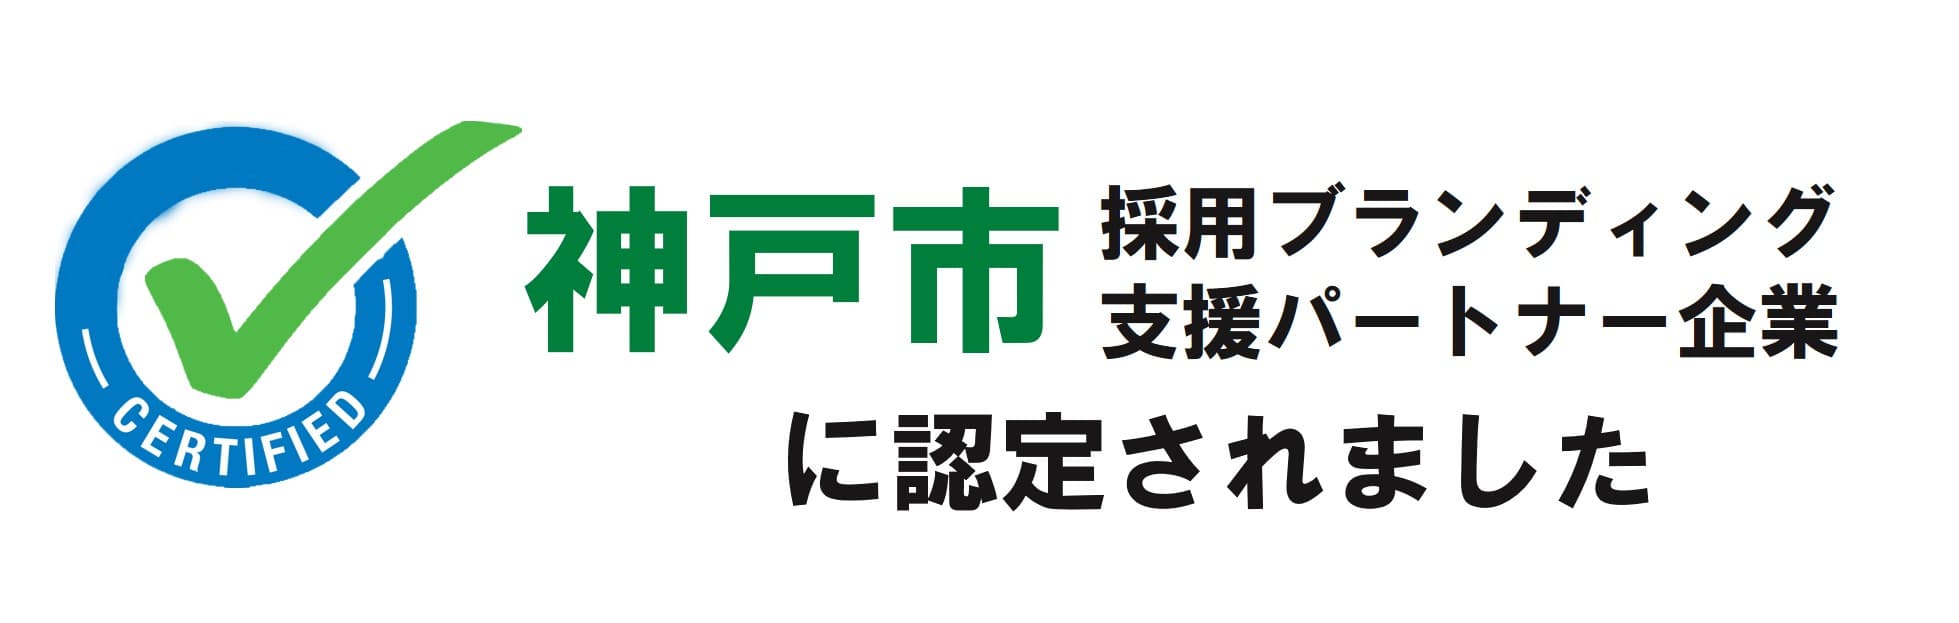 神戸市採用ブランディング支援パートナー企業に認定されました